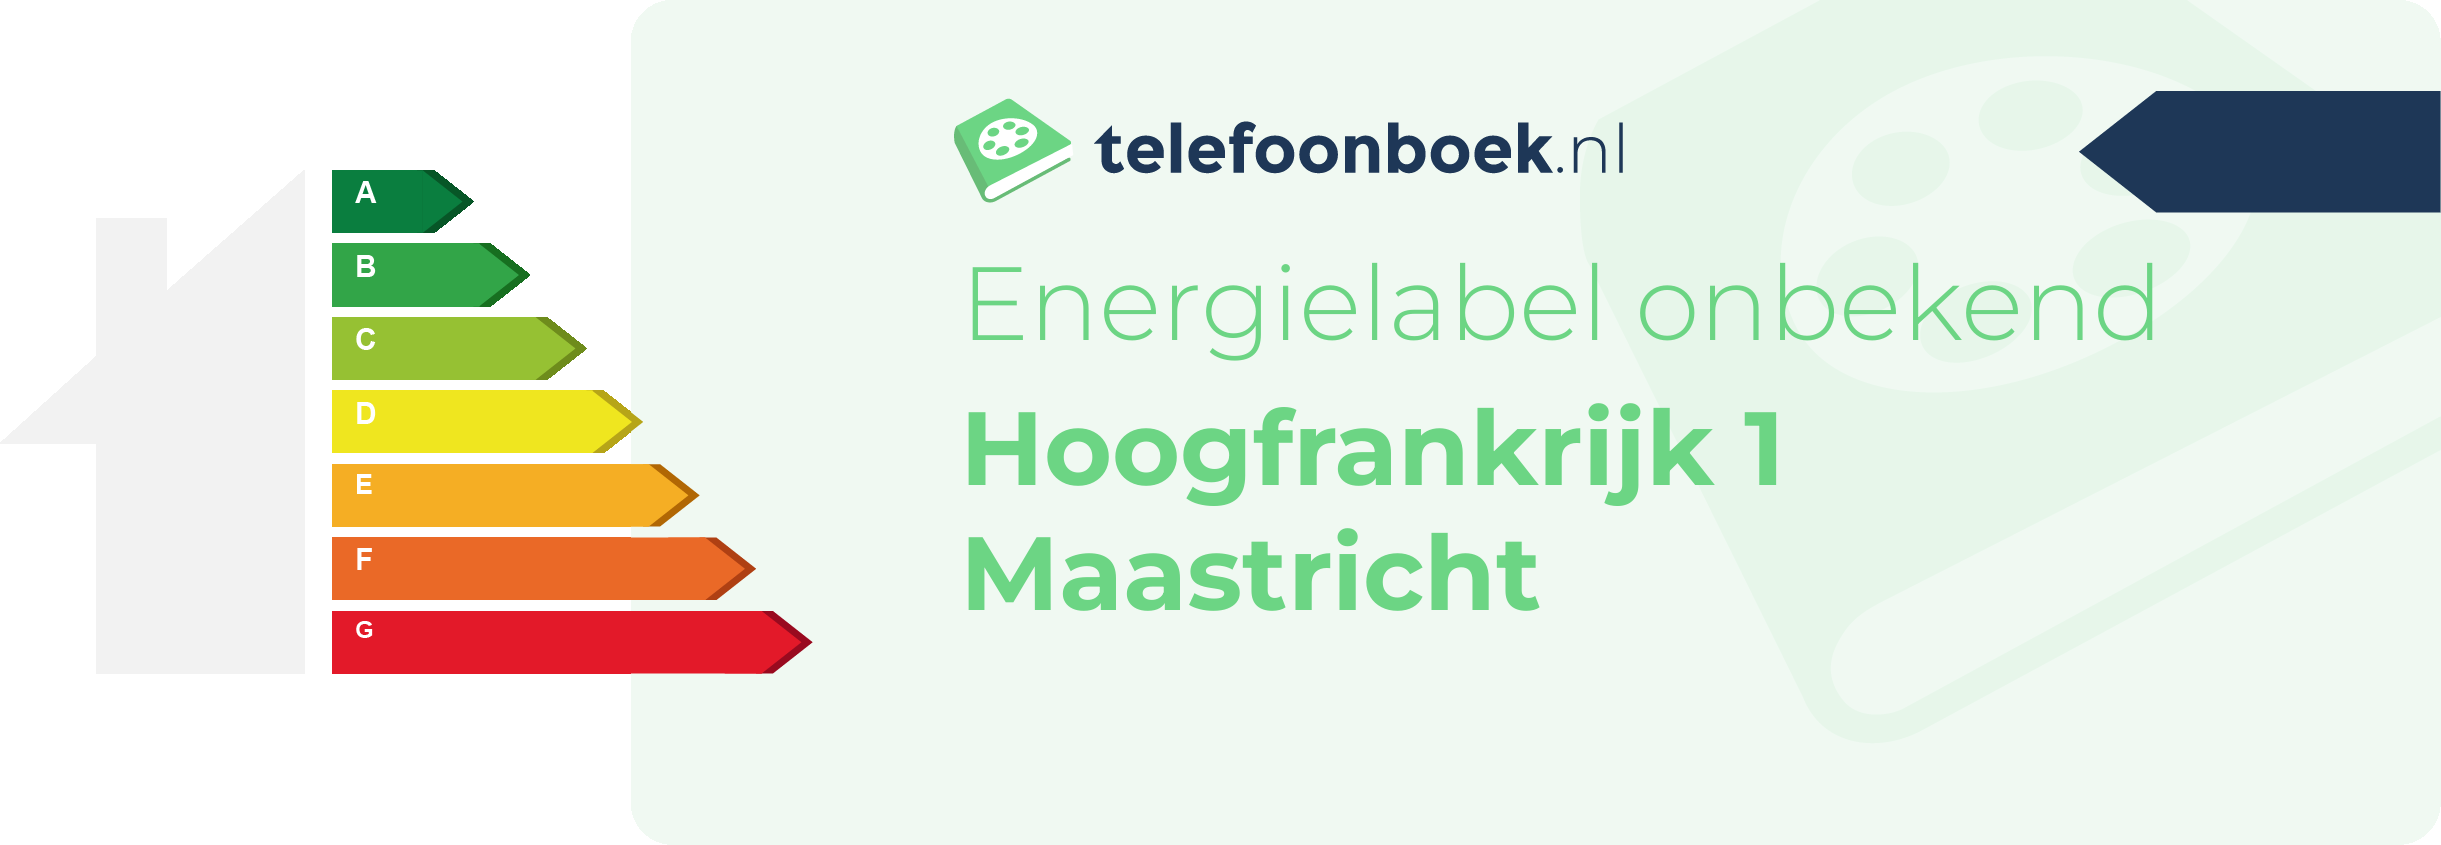 Energielabel Hoogfrankrijk 1 Maastricht